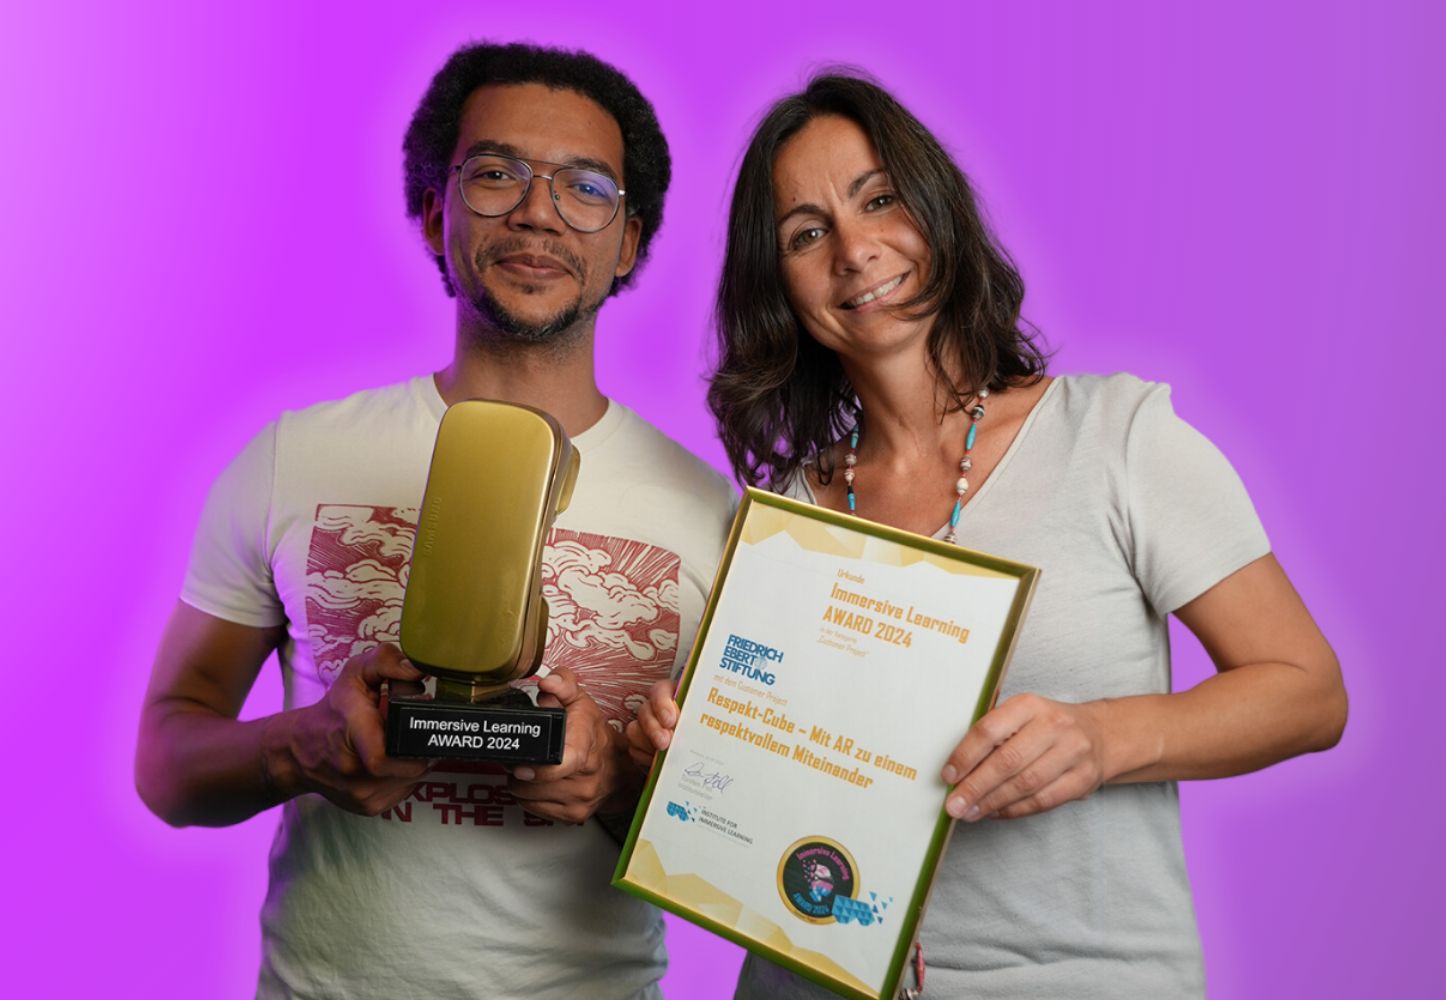 Zwei Personen des Teams Digitale Bildung des FES mit dem Immersive Learning Award und mit dem Respekt-Cube in der Hand